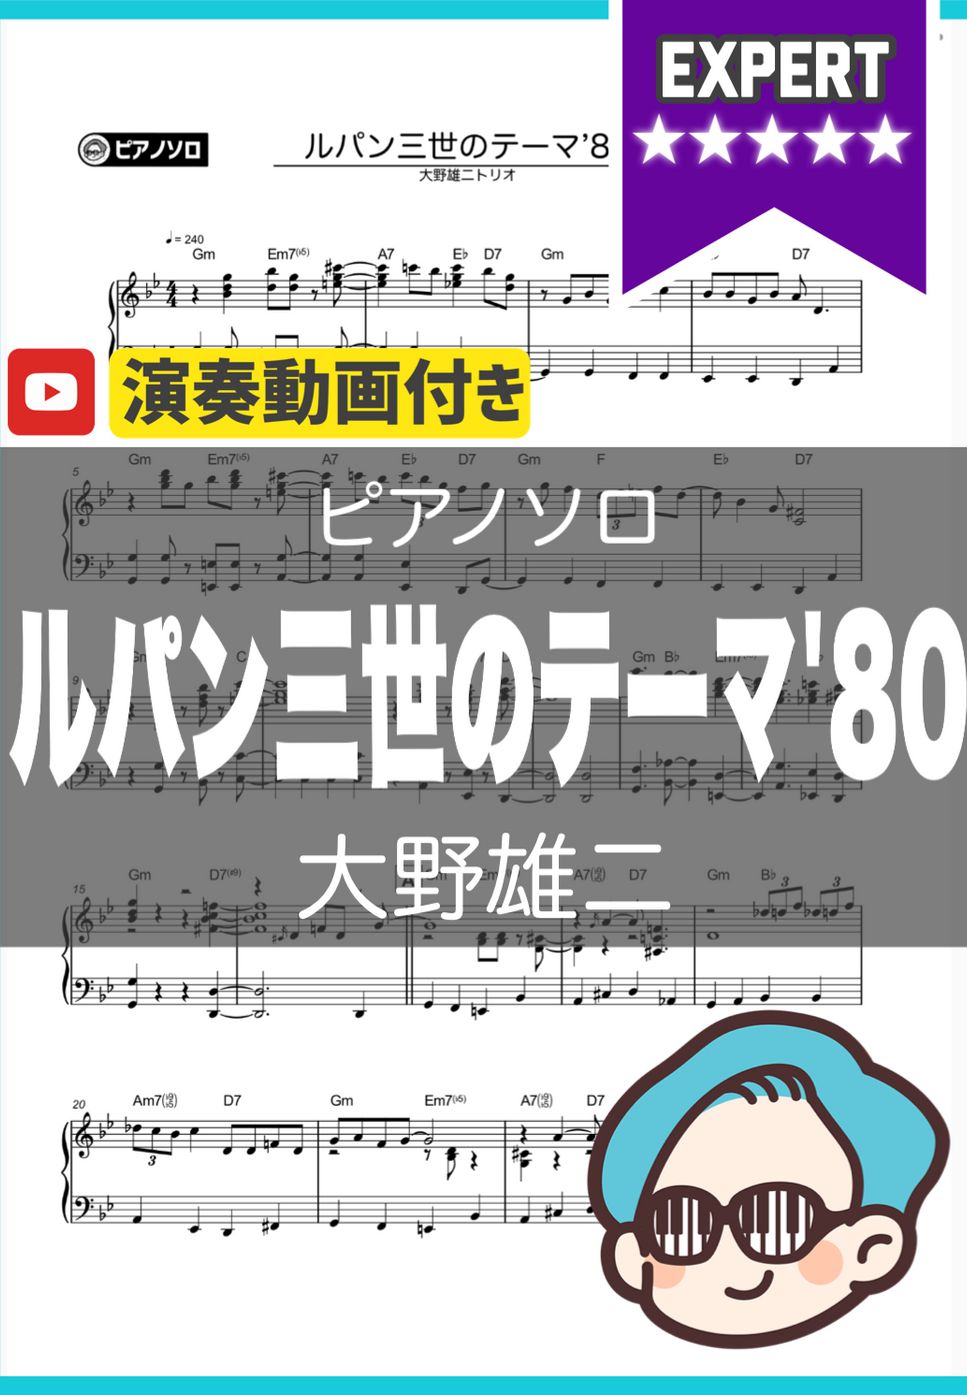 大野雄二 - ルパン三世のテーマ’80 by シータピアノ